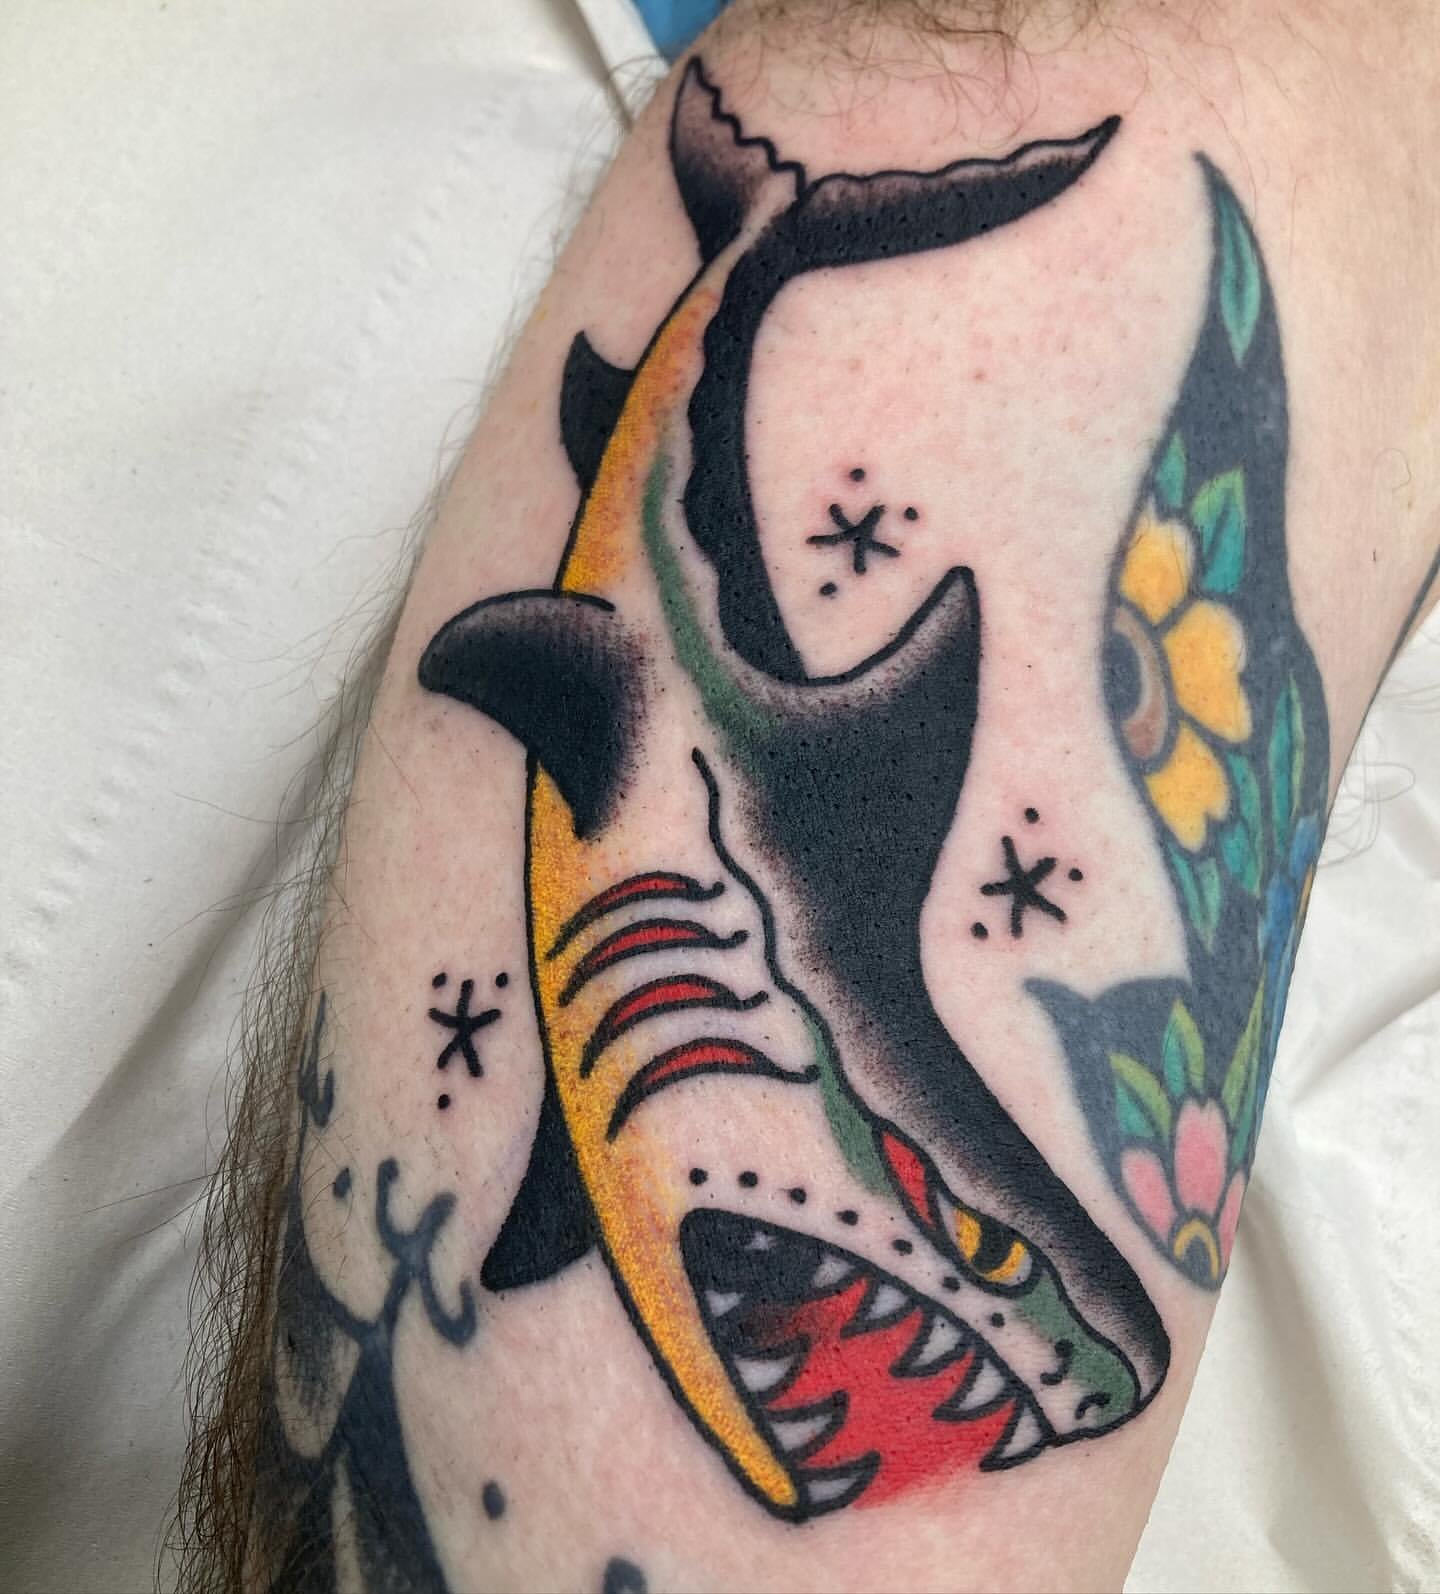 Paul Slifer | St Clair's Tattoo | Edinburgh